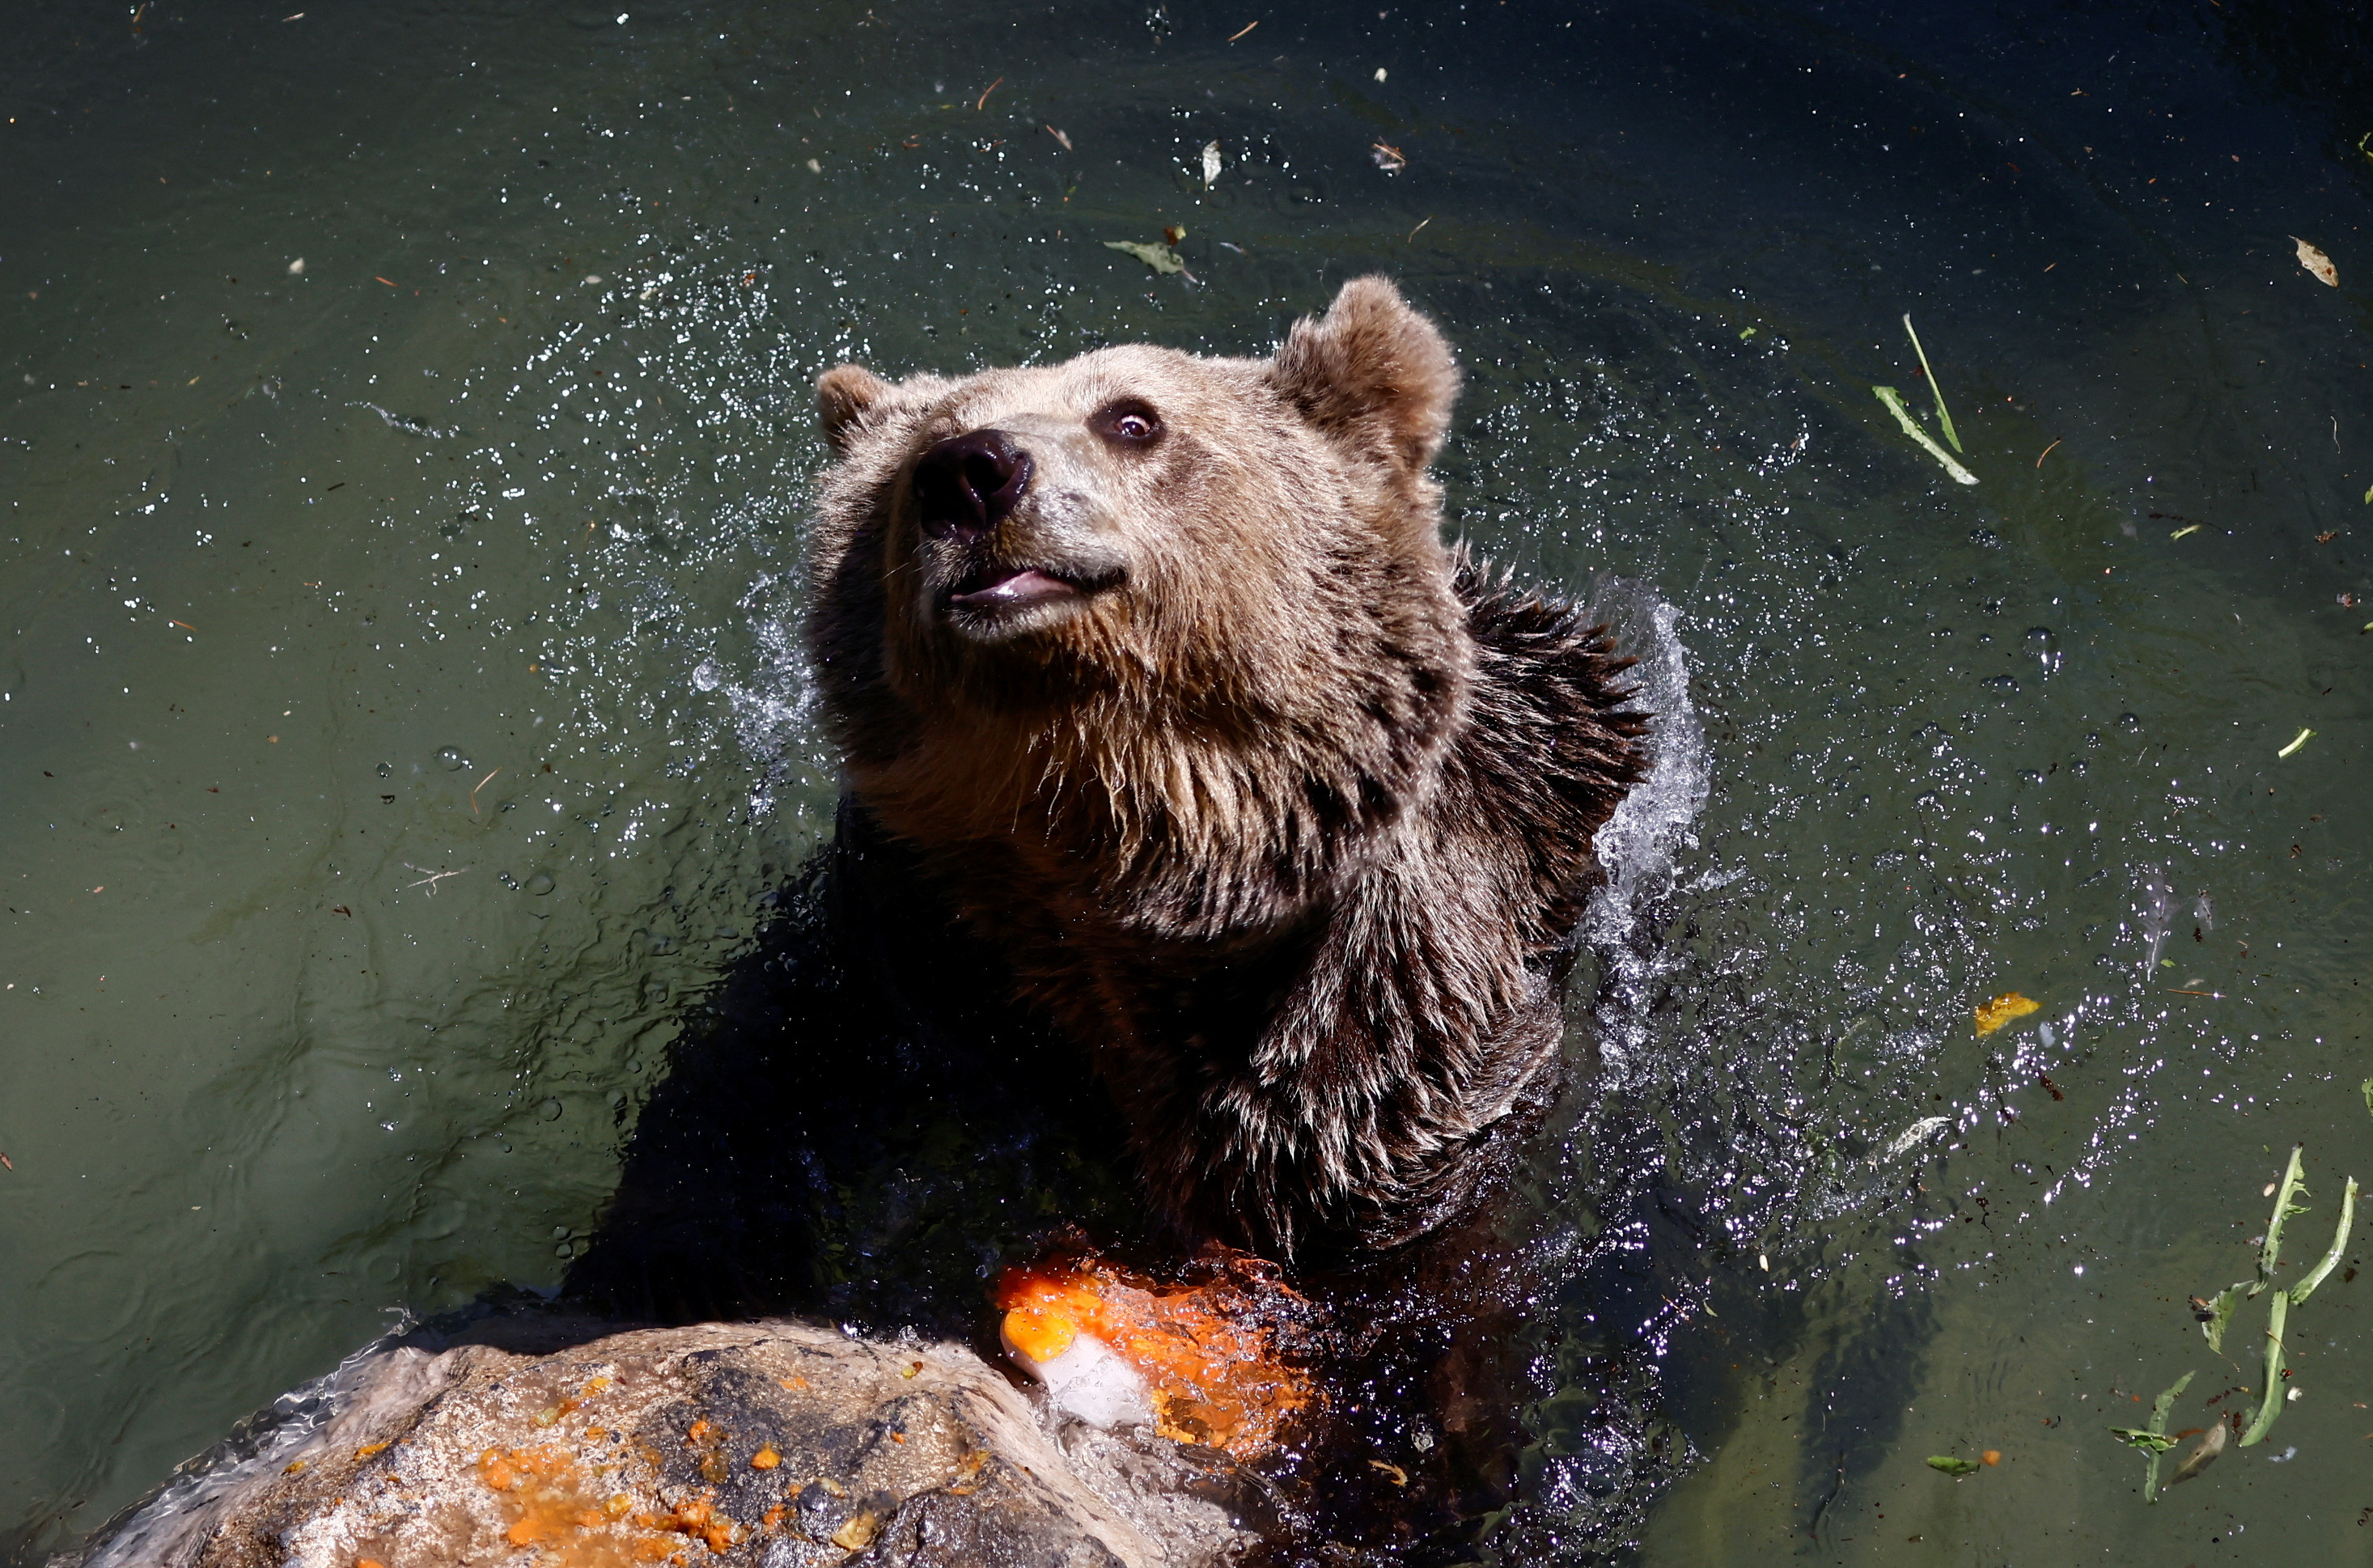 Los animales en cautiverio comenzaron a recibir hielo en sus ojos de agua para ayudar a bajar su temperatura corporal. Se puede observar a este oso pardo nadando en el zoológico de Roma.